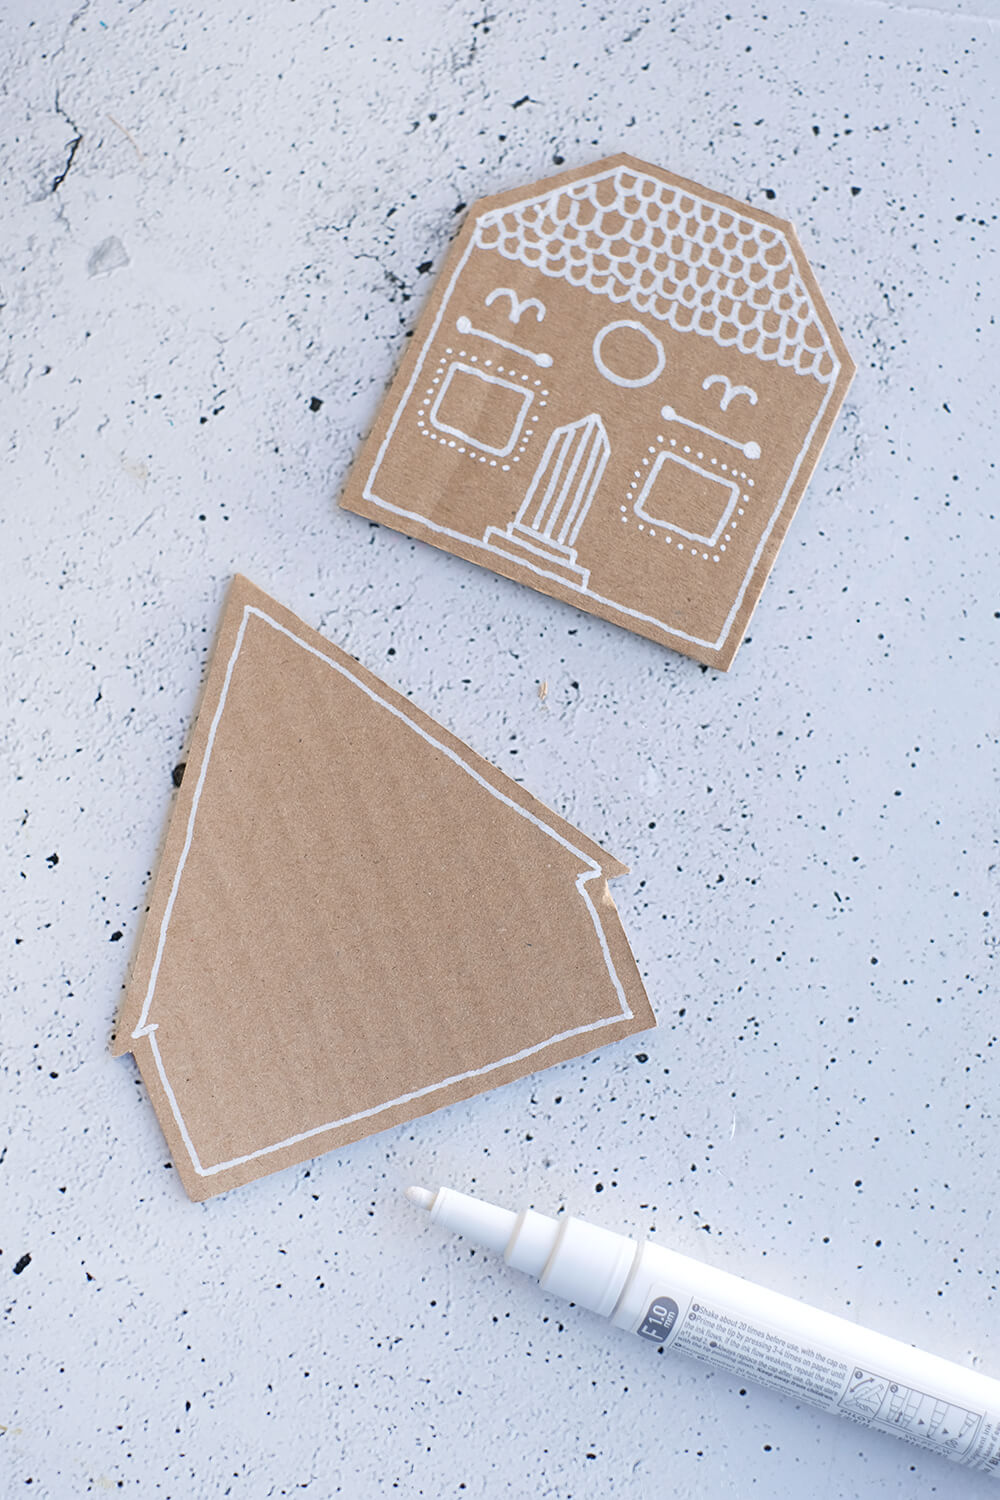 DIY Upcycling Weihnachtsdeko - Lebkuchenhäuser aus Pappkarton von Gingered Things